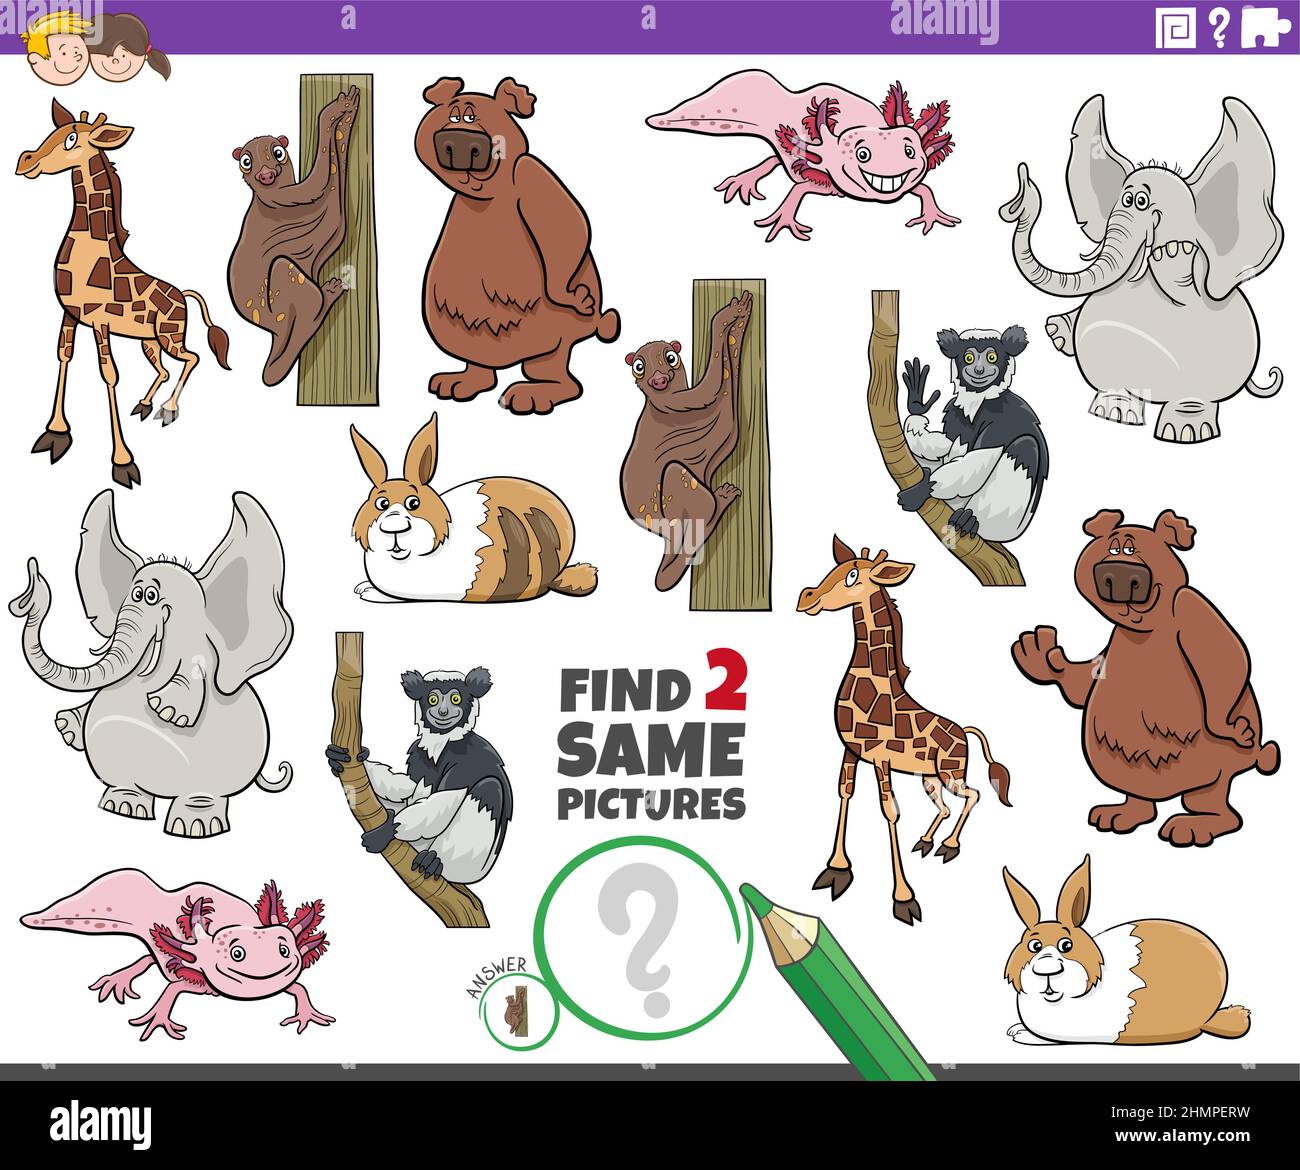 Illustration de dessin animé de trouver deux mêmes images jeu éducatif avec des personnages d'animaux sauvages de dessin animé Illustration de Vecteur